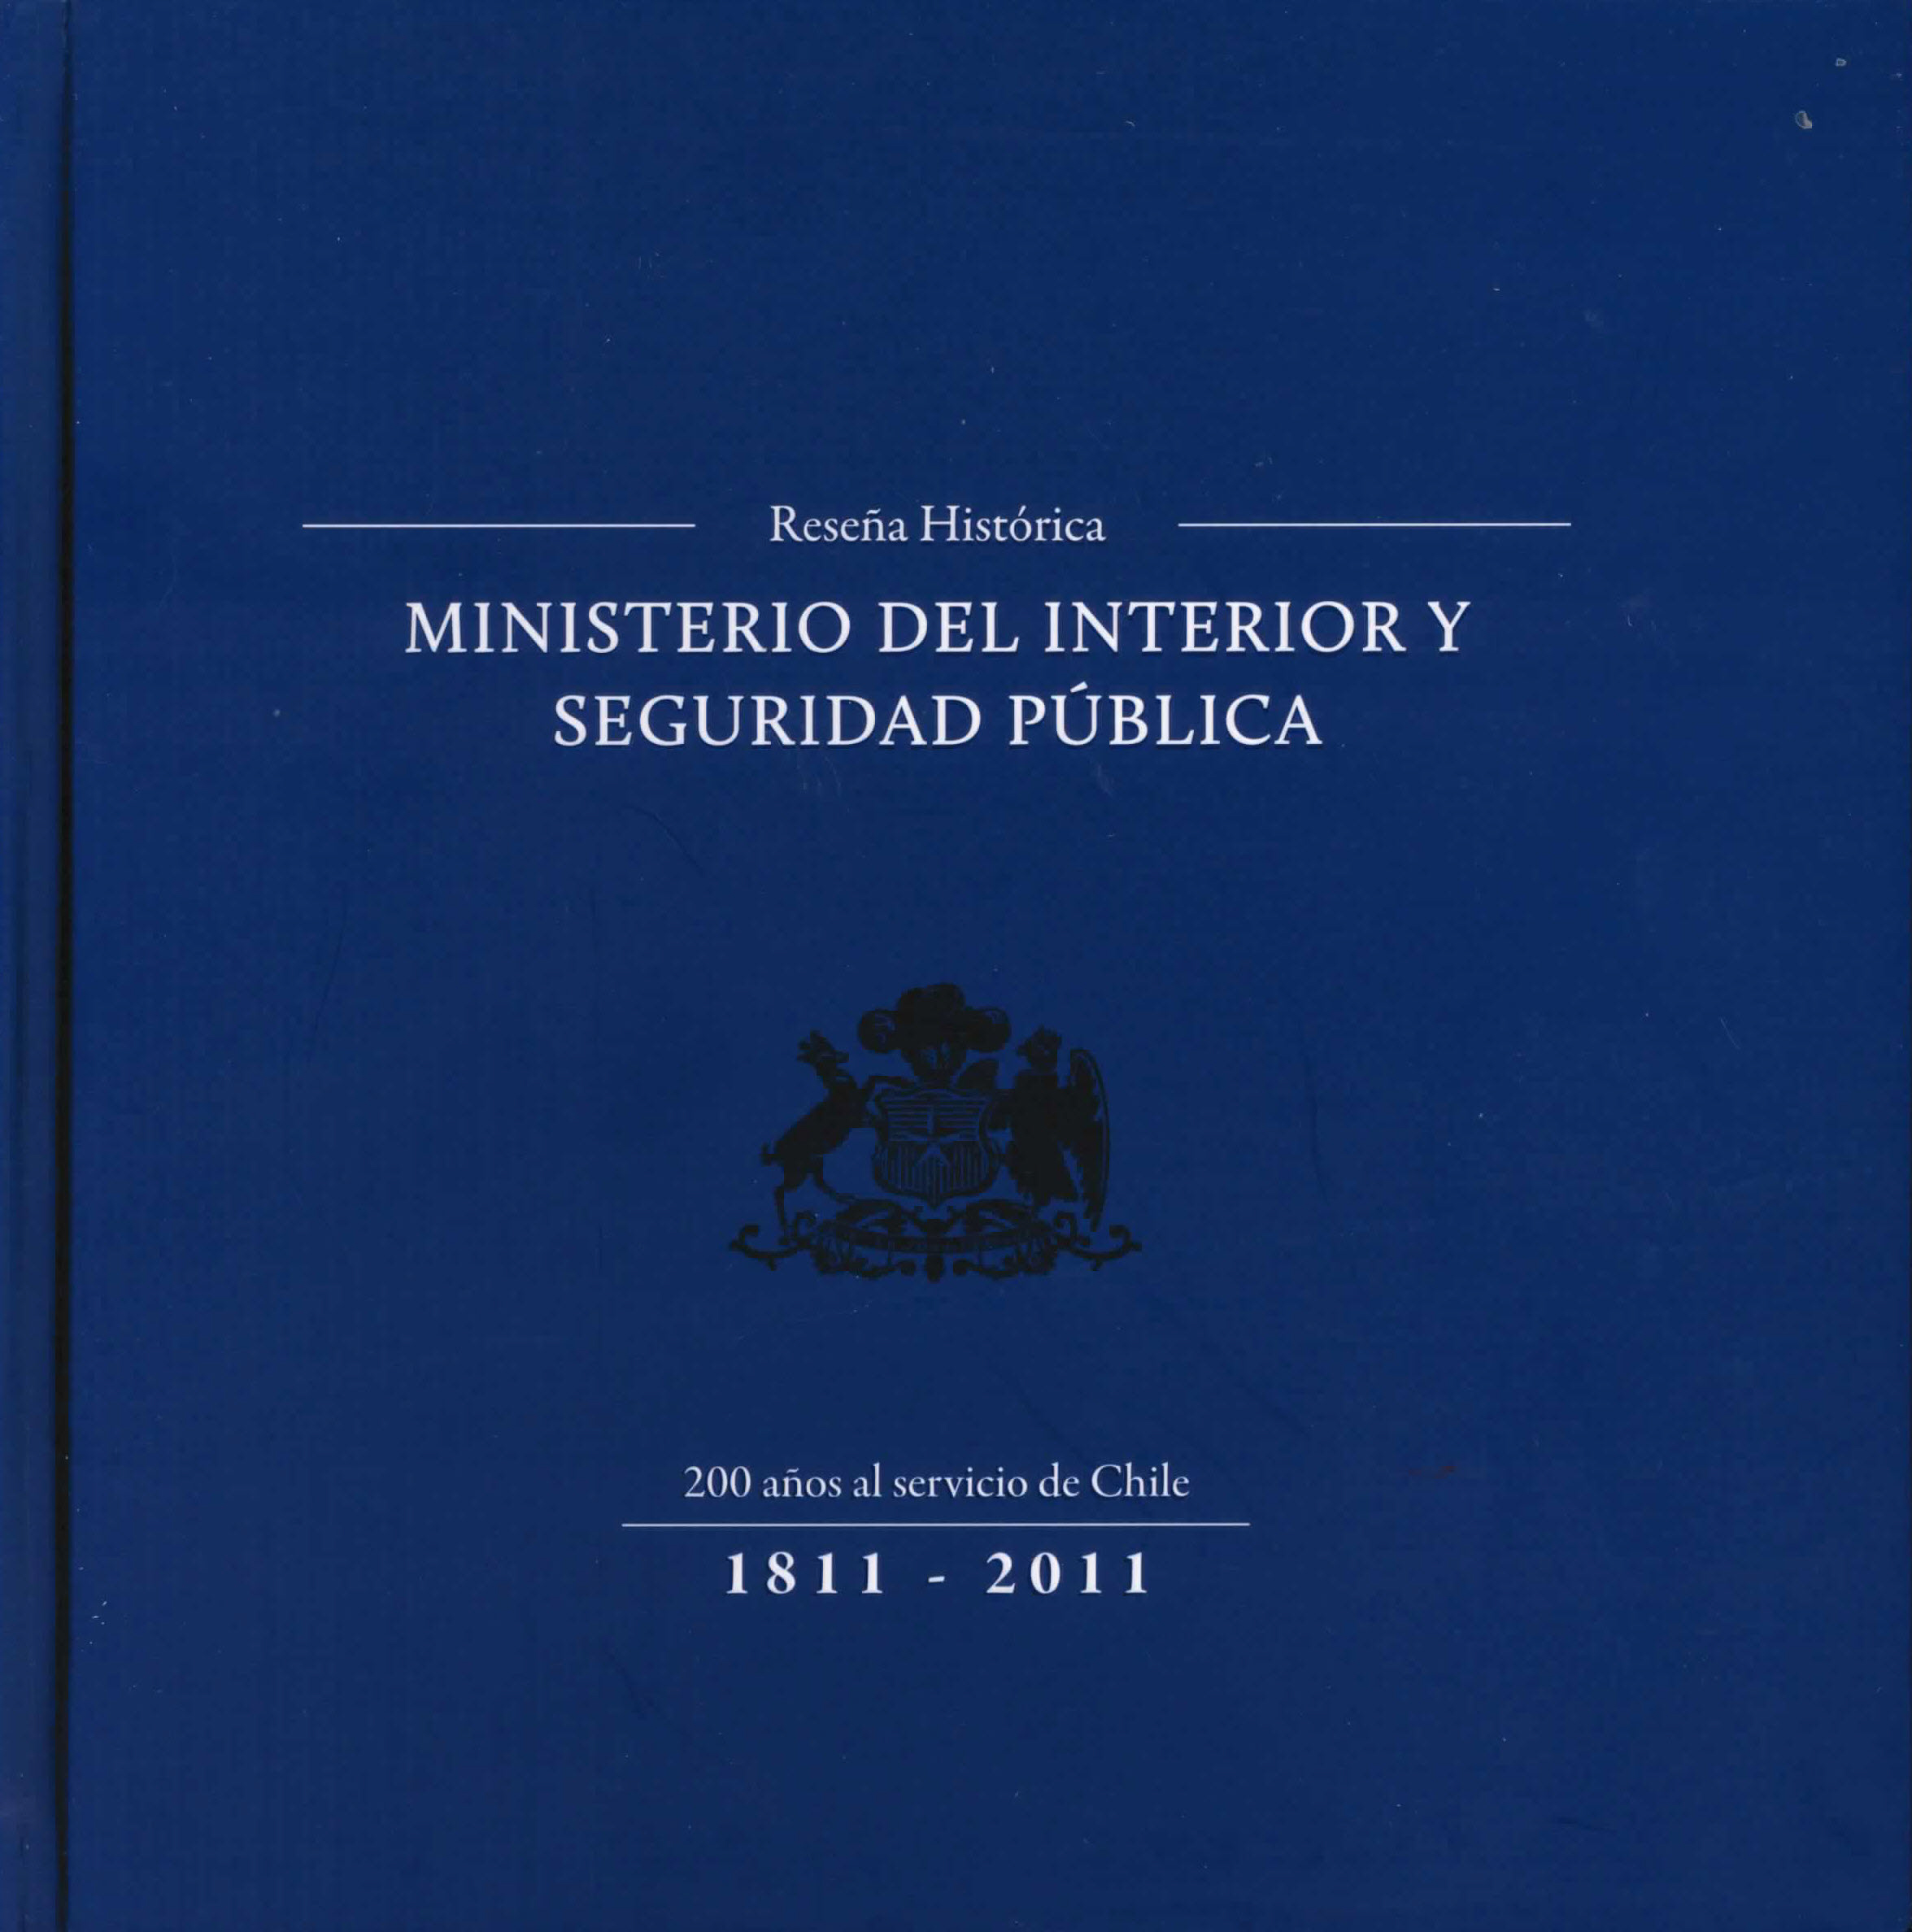 Reseña histórica Ministerio de hacienda y seguridad pública